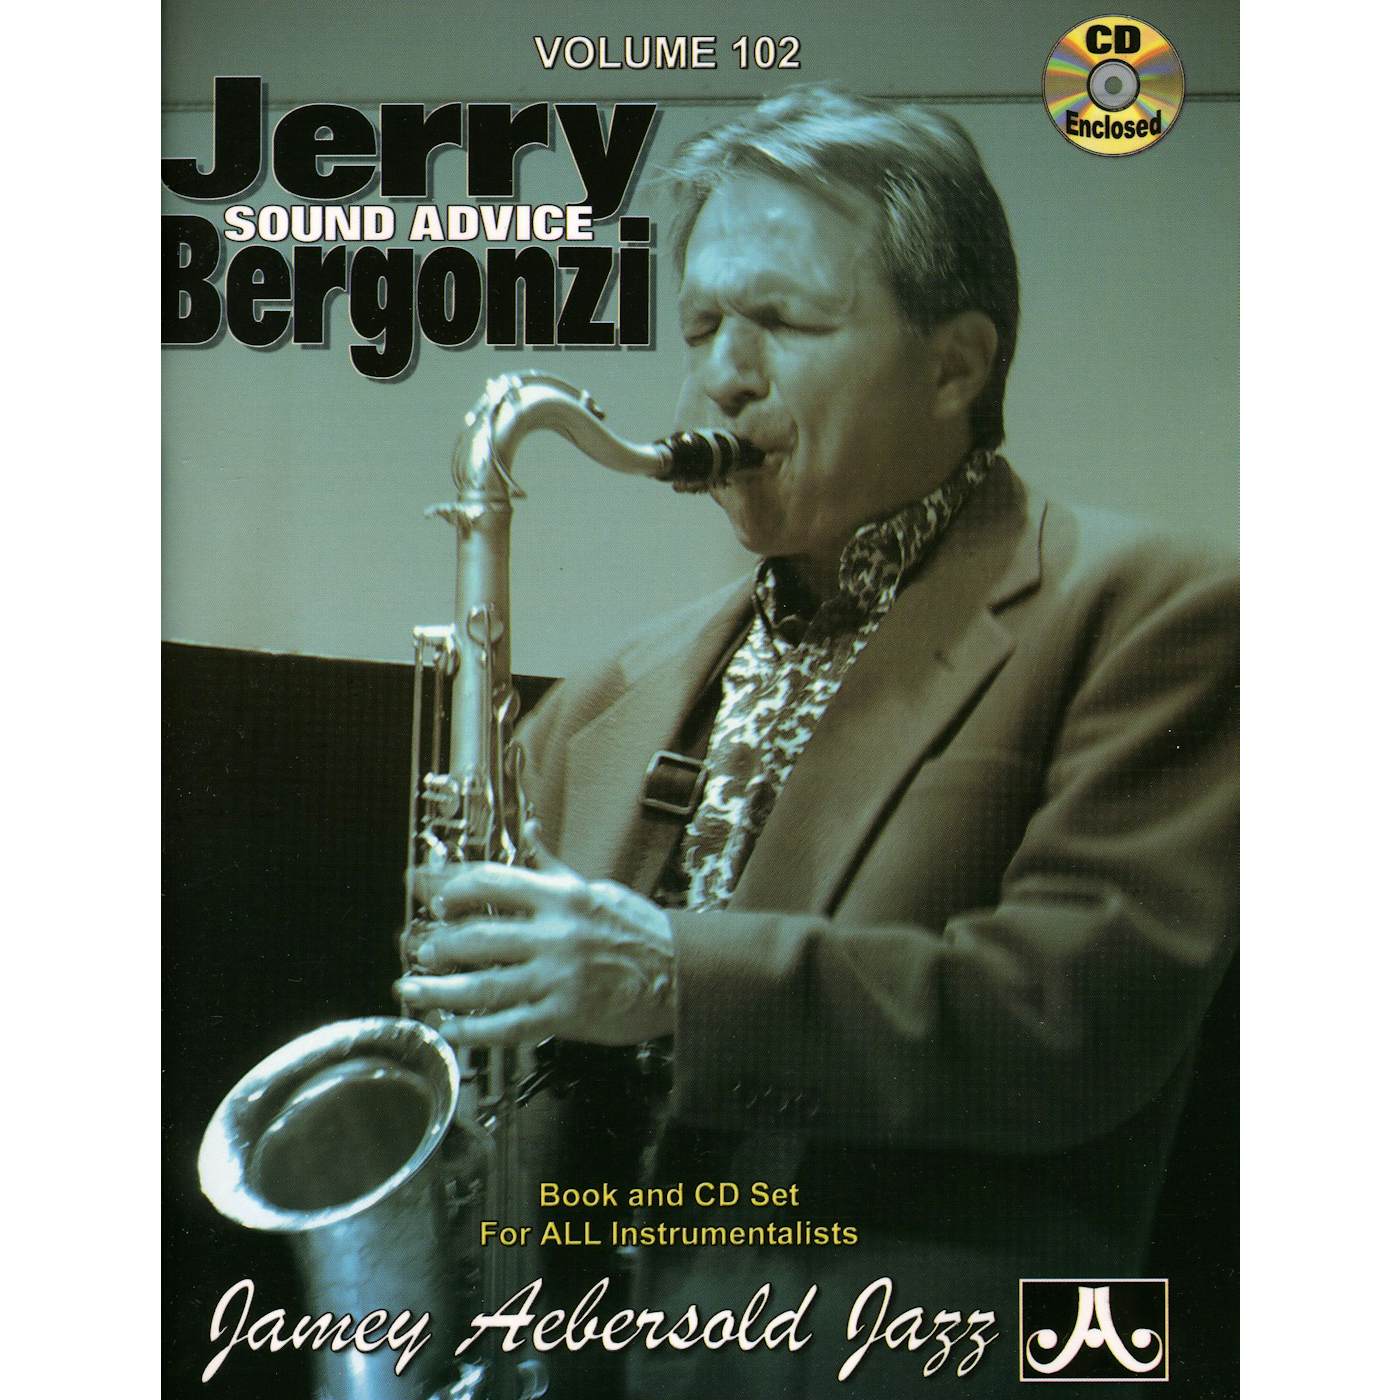 Jamey Aebersold JERRY BERGONZI: SOUND ADVICE CD